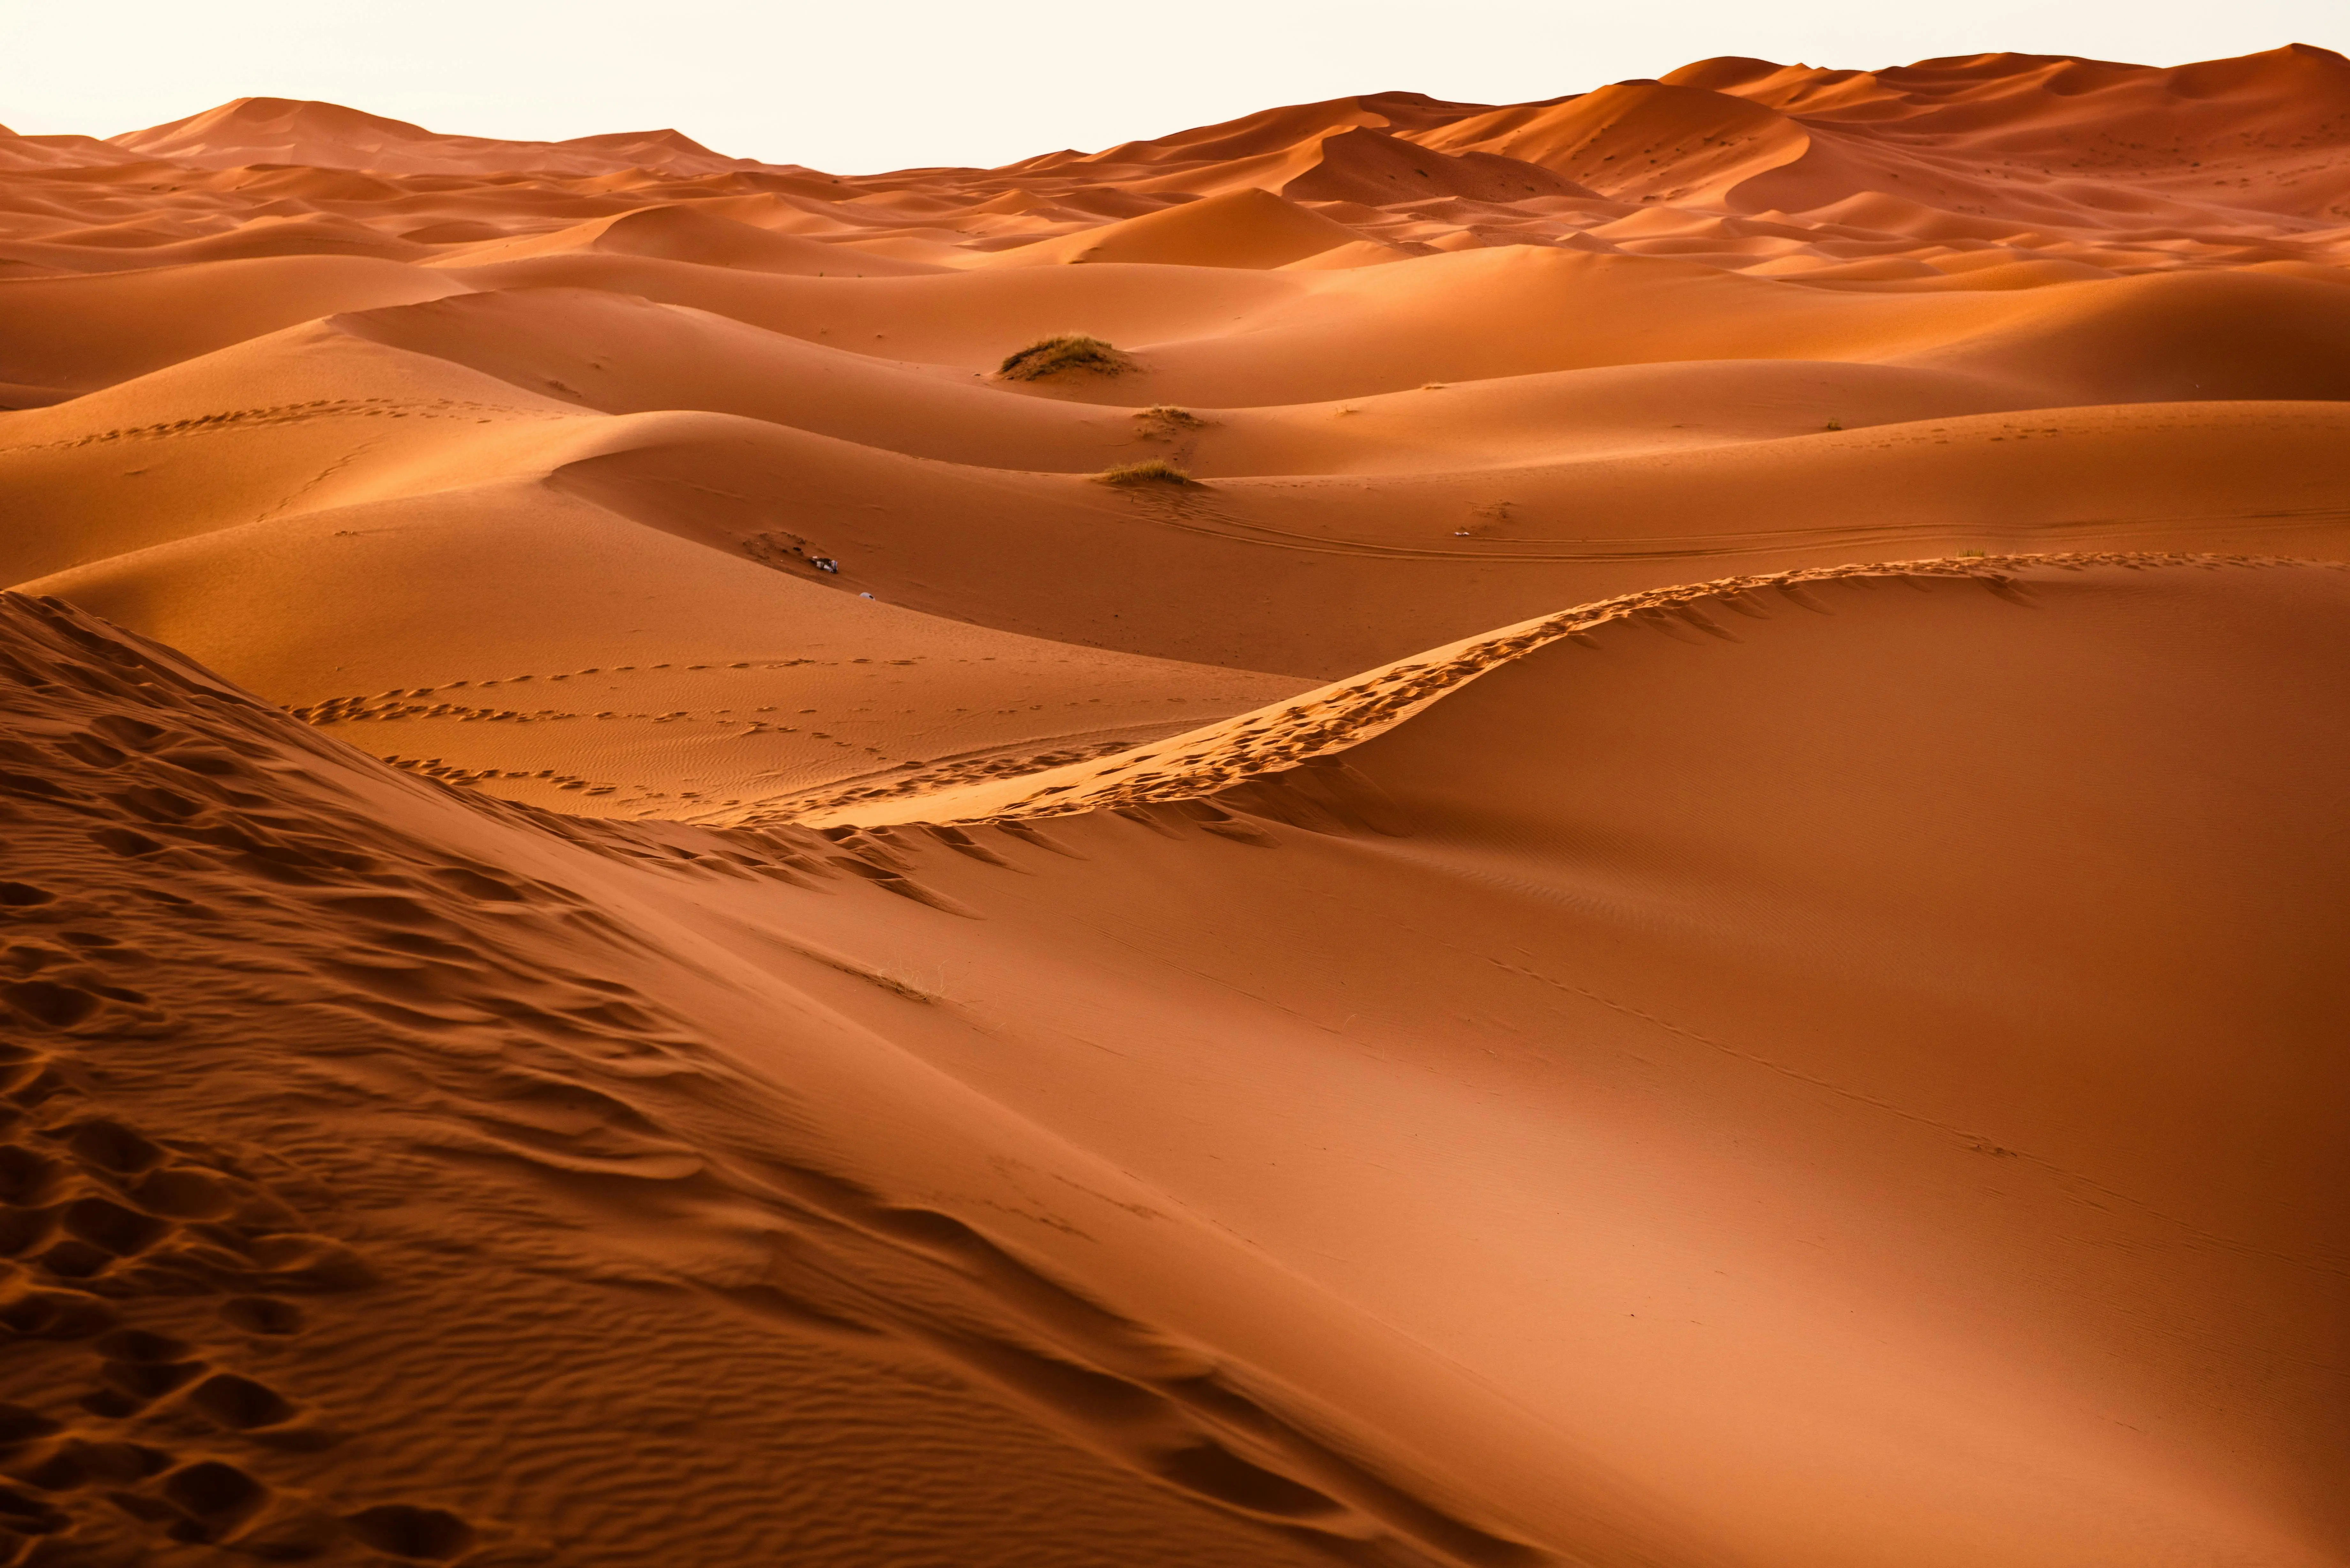  Vue du d&eacutesert du Sahara au Maroc, tendues de sable à perte de vue.